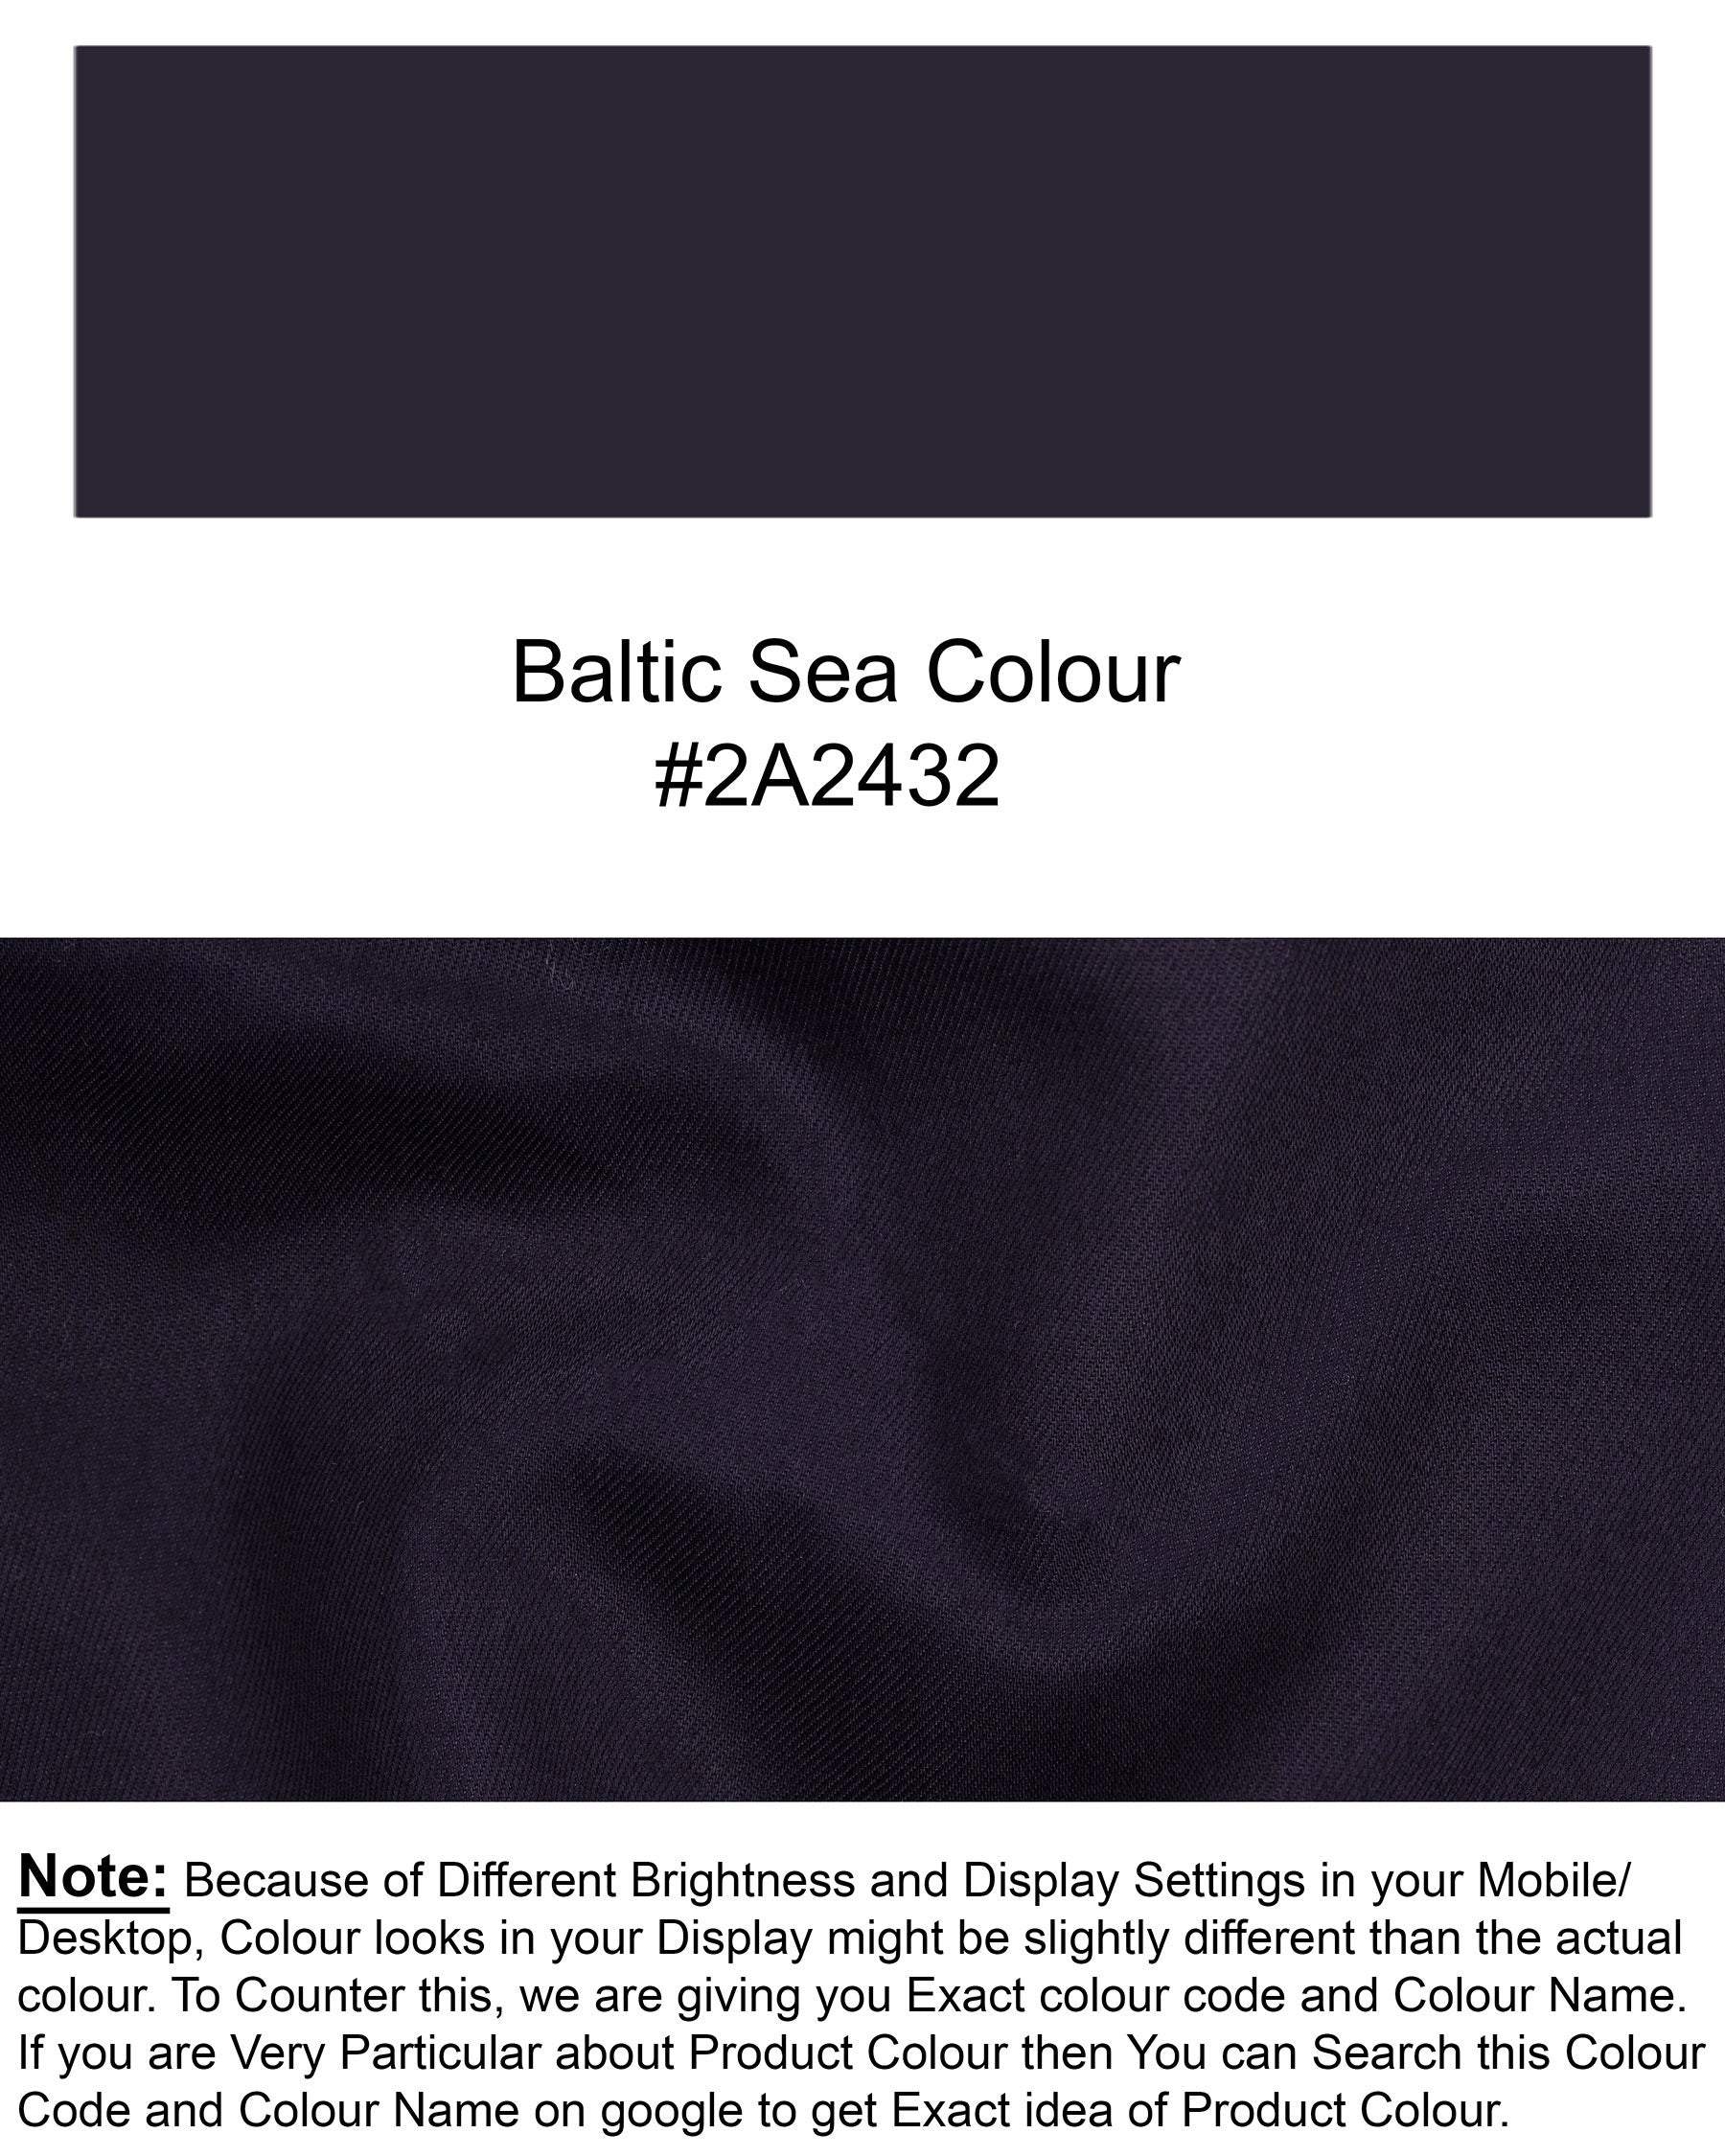 Baltic Sea Cross Buttoned Premium Cotton Bandhgala Blazer BL1616-CBG2-36, BL1616-CBG2-38, BL1616-CBG2-40, BL1616-CBG2-42, BL1616-CBG2-44, BL1616-CBG2-46, BL1616-CBG2-48, BL1616-CBG2-50, BL1616-CBG2-52, BL1616-CBG2-54, BL1616-CBG2-56, BL1616-CBG2-58, BL1616-CBG2-60